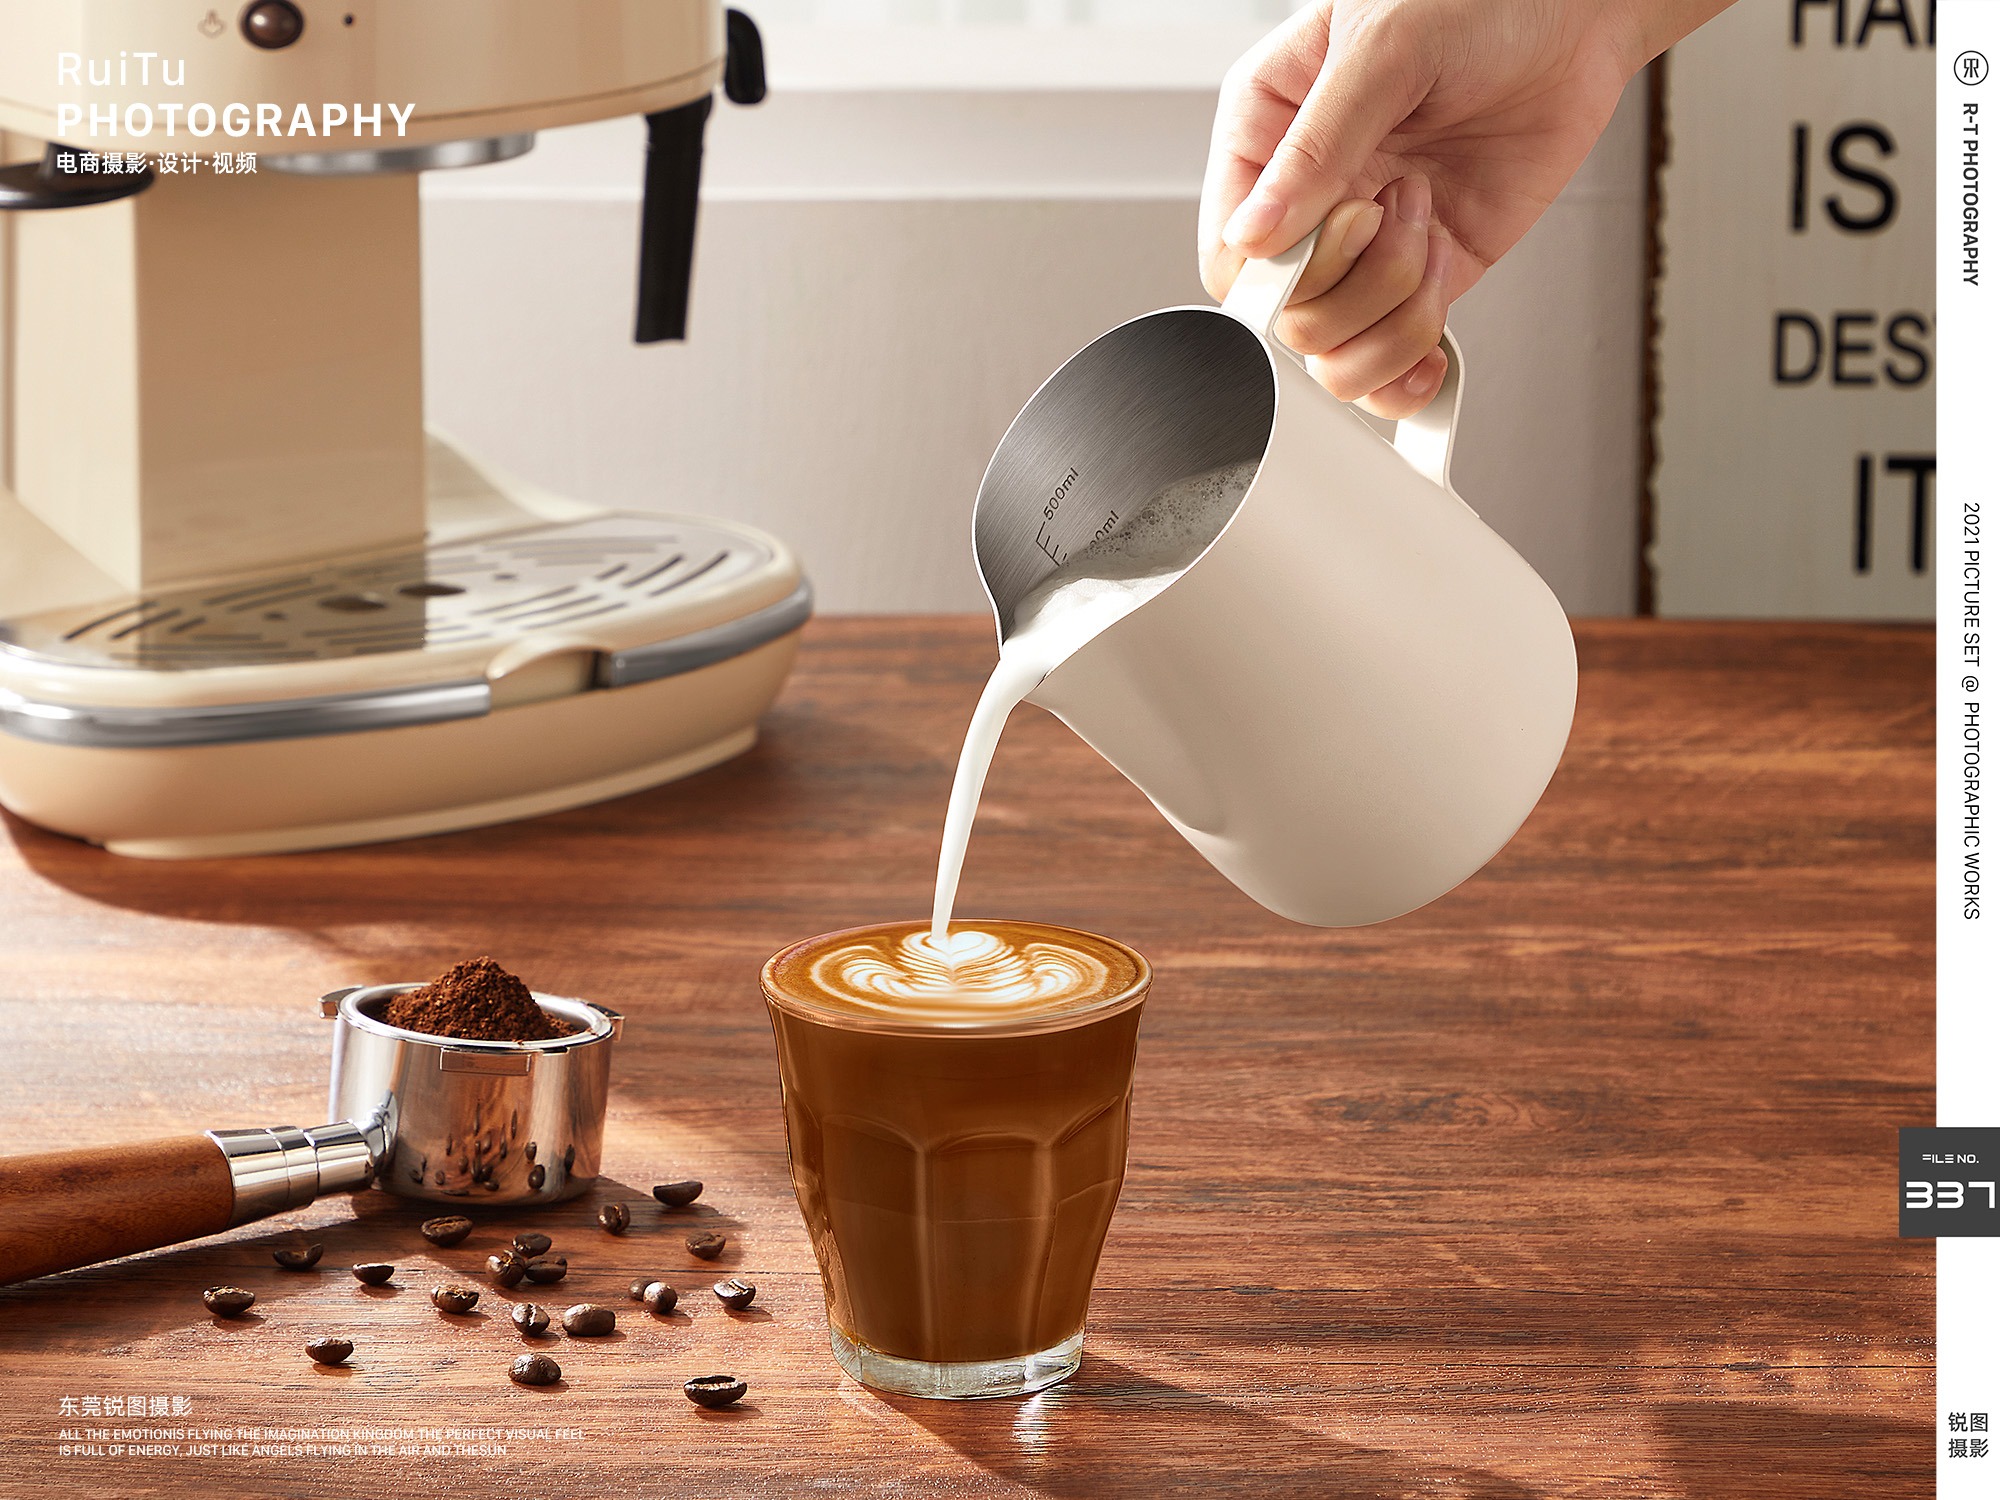 咖啡拉花制作过程讲解 如何拉出一杯完美的拿铁拉花？咖啡科学篇 中国咖啡网